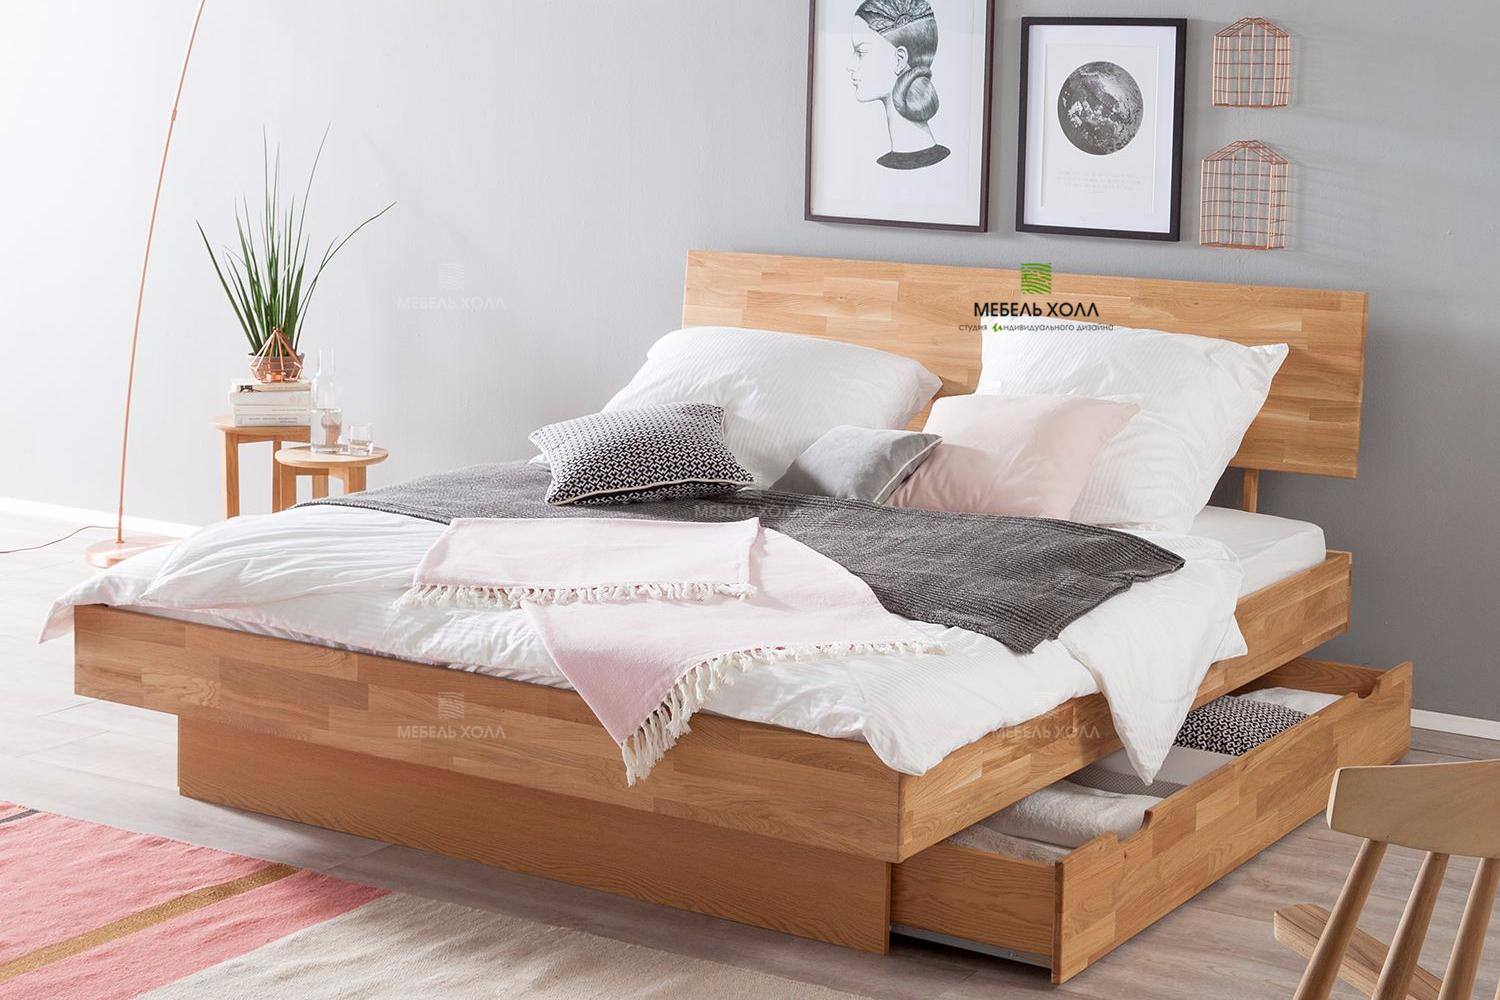 Кровать на два спальных места из шпона с одним сплошным выдвижным ящиком на направляющих компании Hettich.